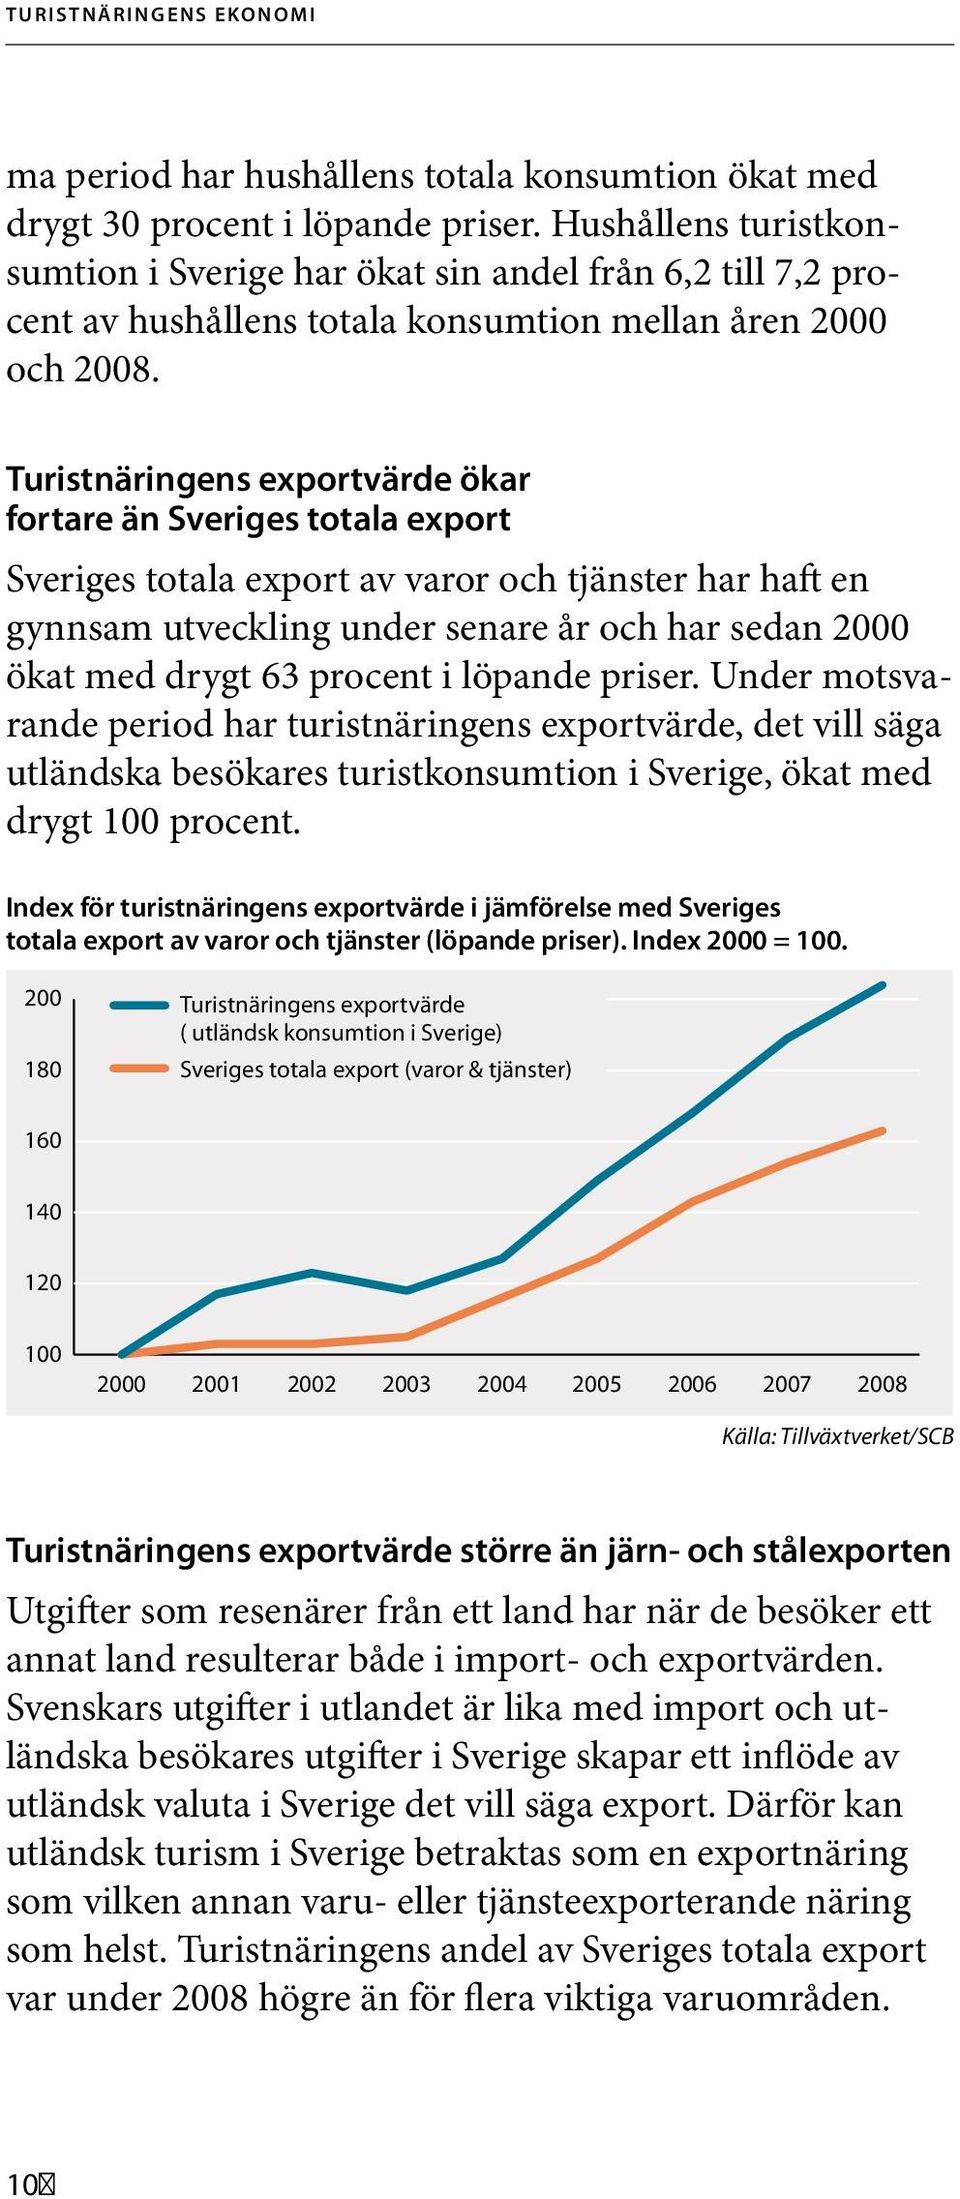 Turistnäringens exportvärde ökar fortare än Sveriges totala export Sveriges totala export av varor och tjänster har haft en gynnsam utveckling under senare år och har sedan 2000 ökat med drygt 63